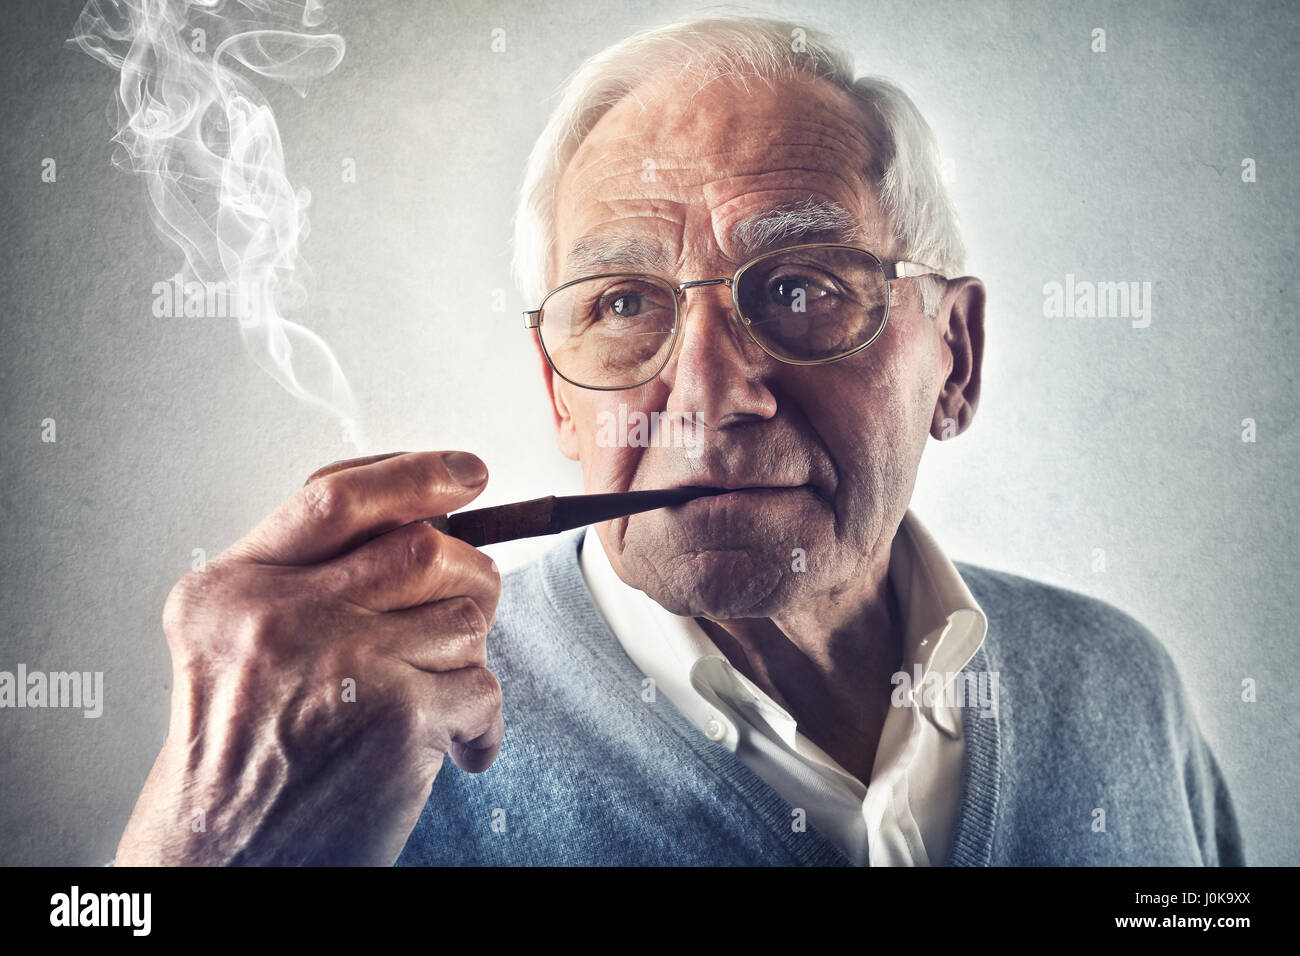 Old man smoking pipe Stock Photo